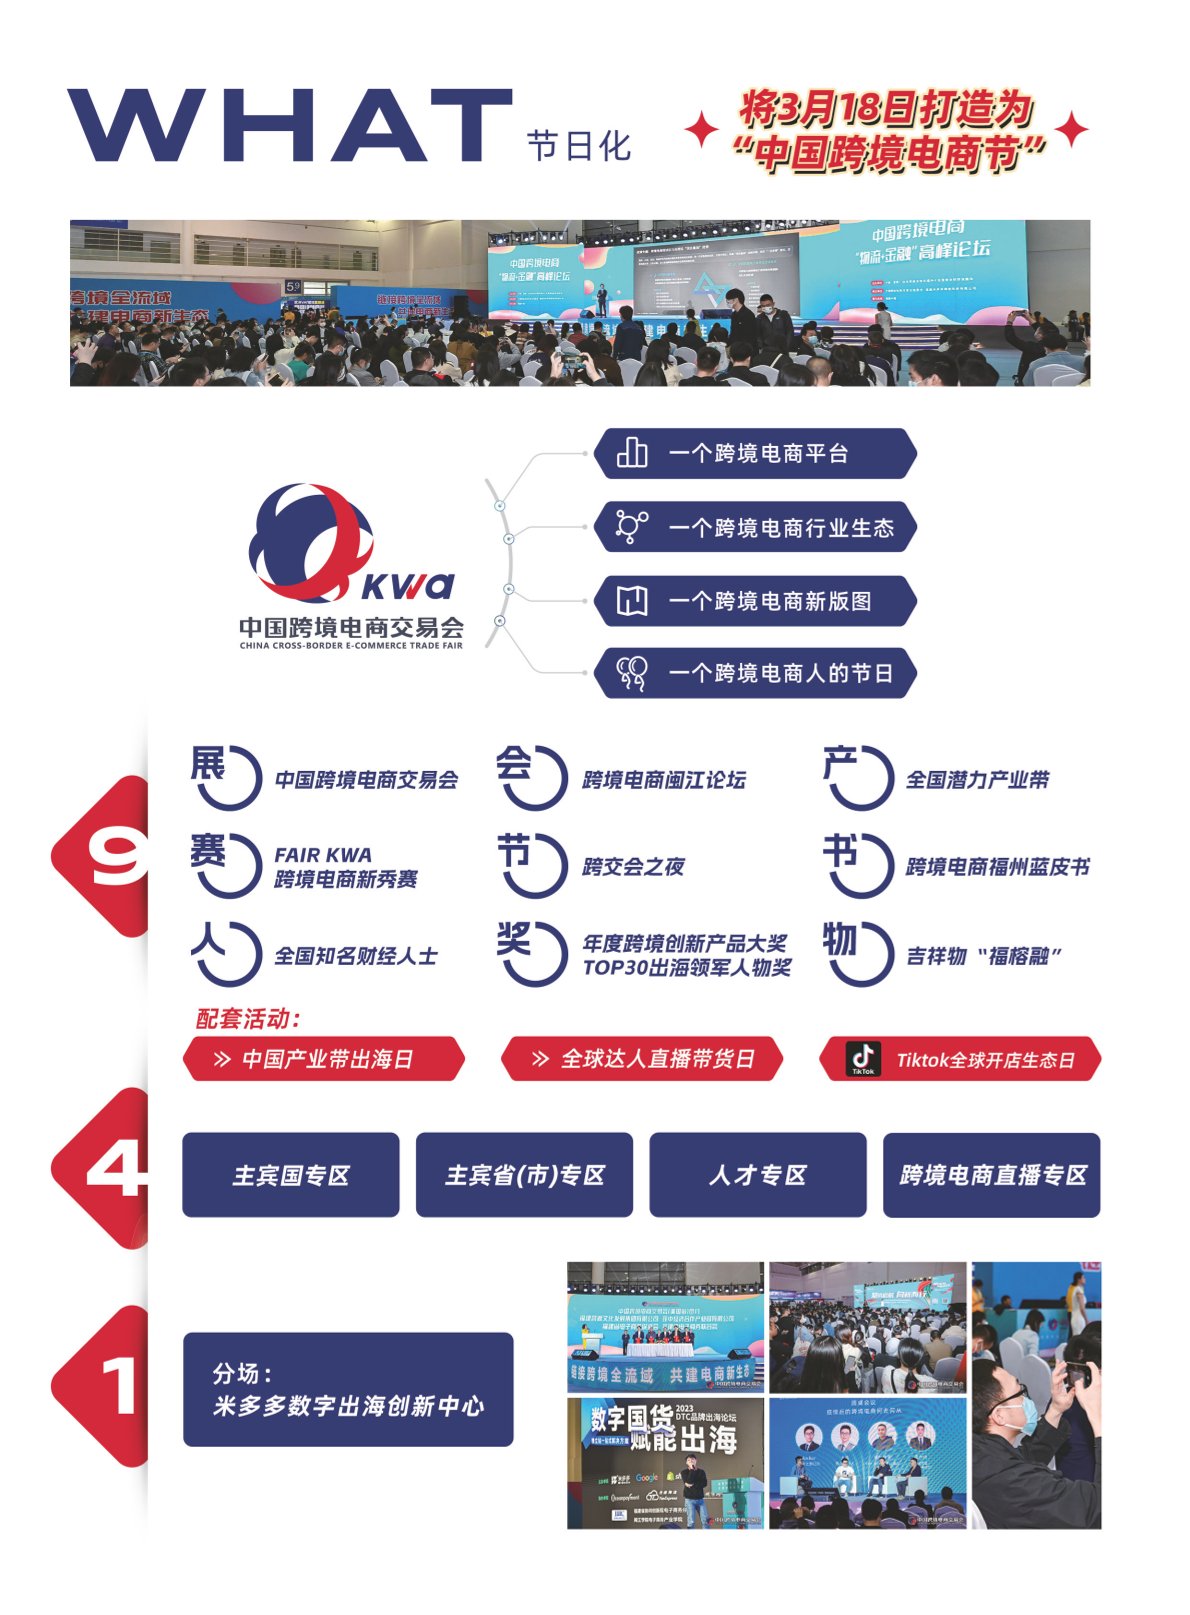 2024中国跨境电商交易会·福州跨境电商展